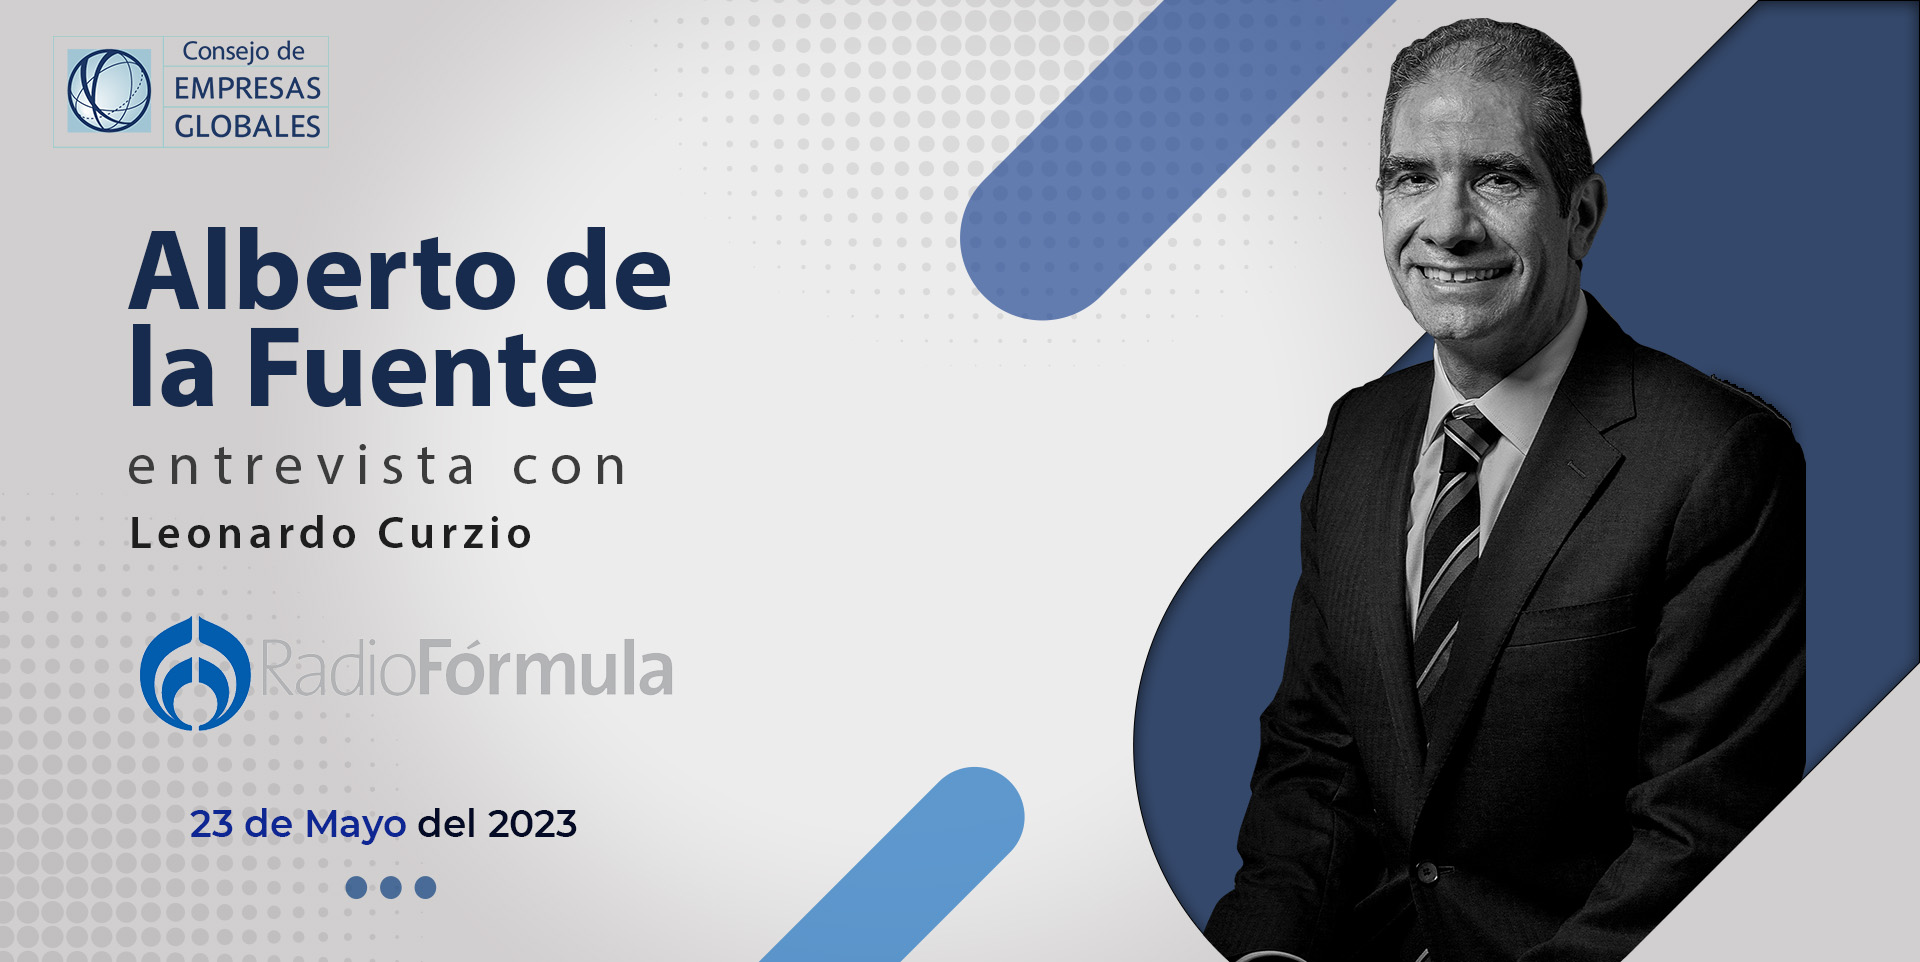 Alberto de la Fuente, presidente del Consejo de Empresas Globales en entrevista con Leonardo Curzio en Radio Fórmula